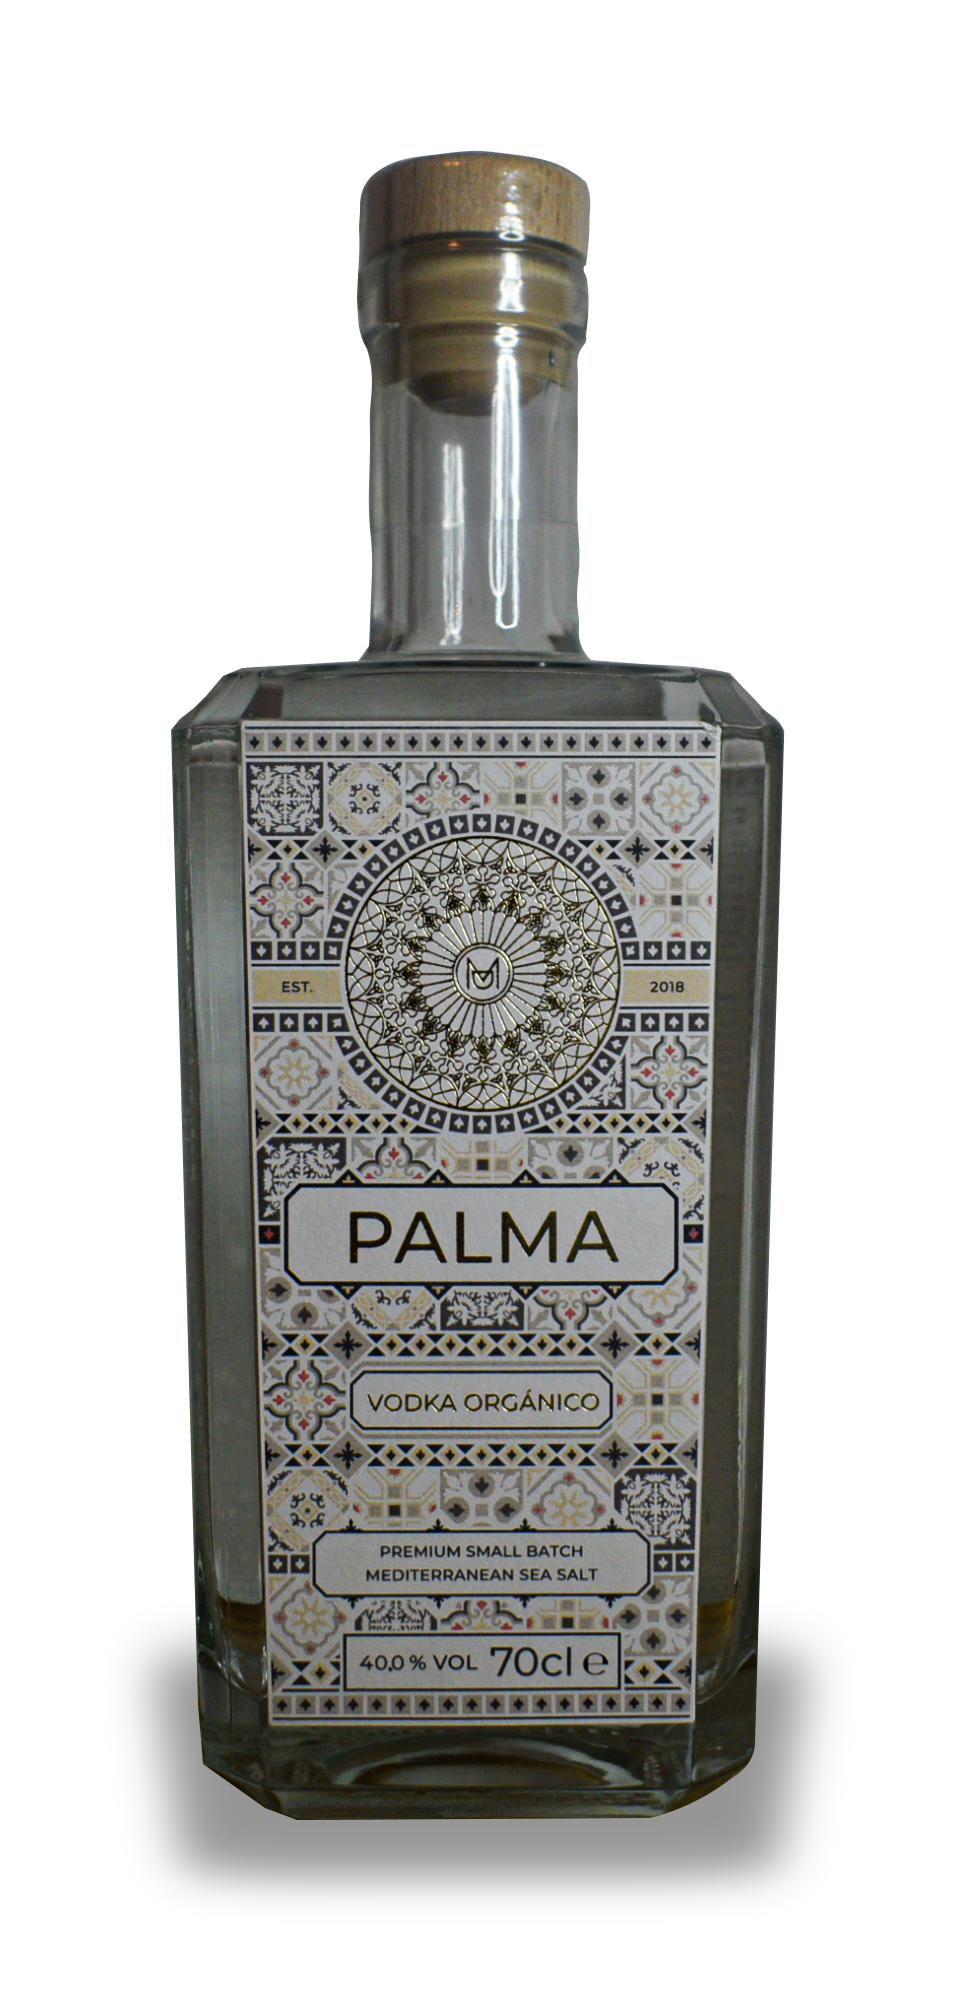 PALMA Vodka